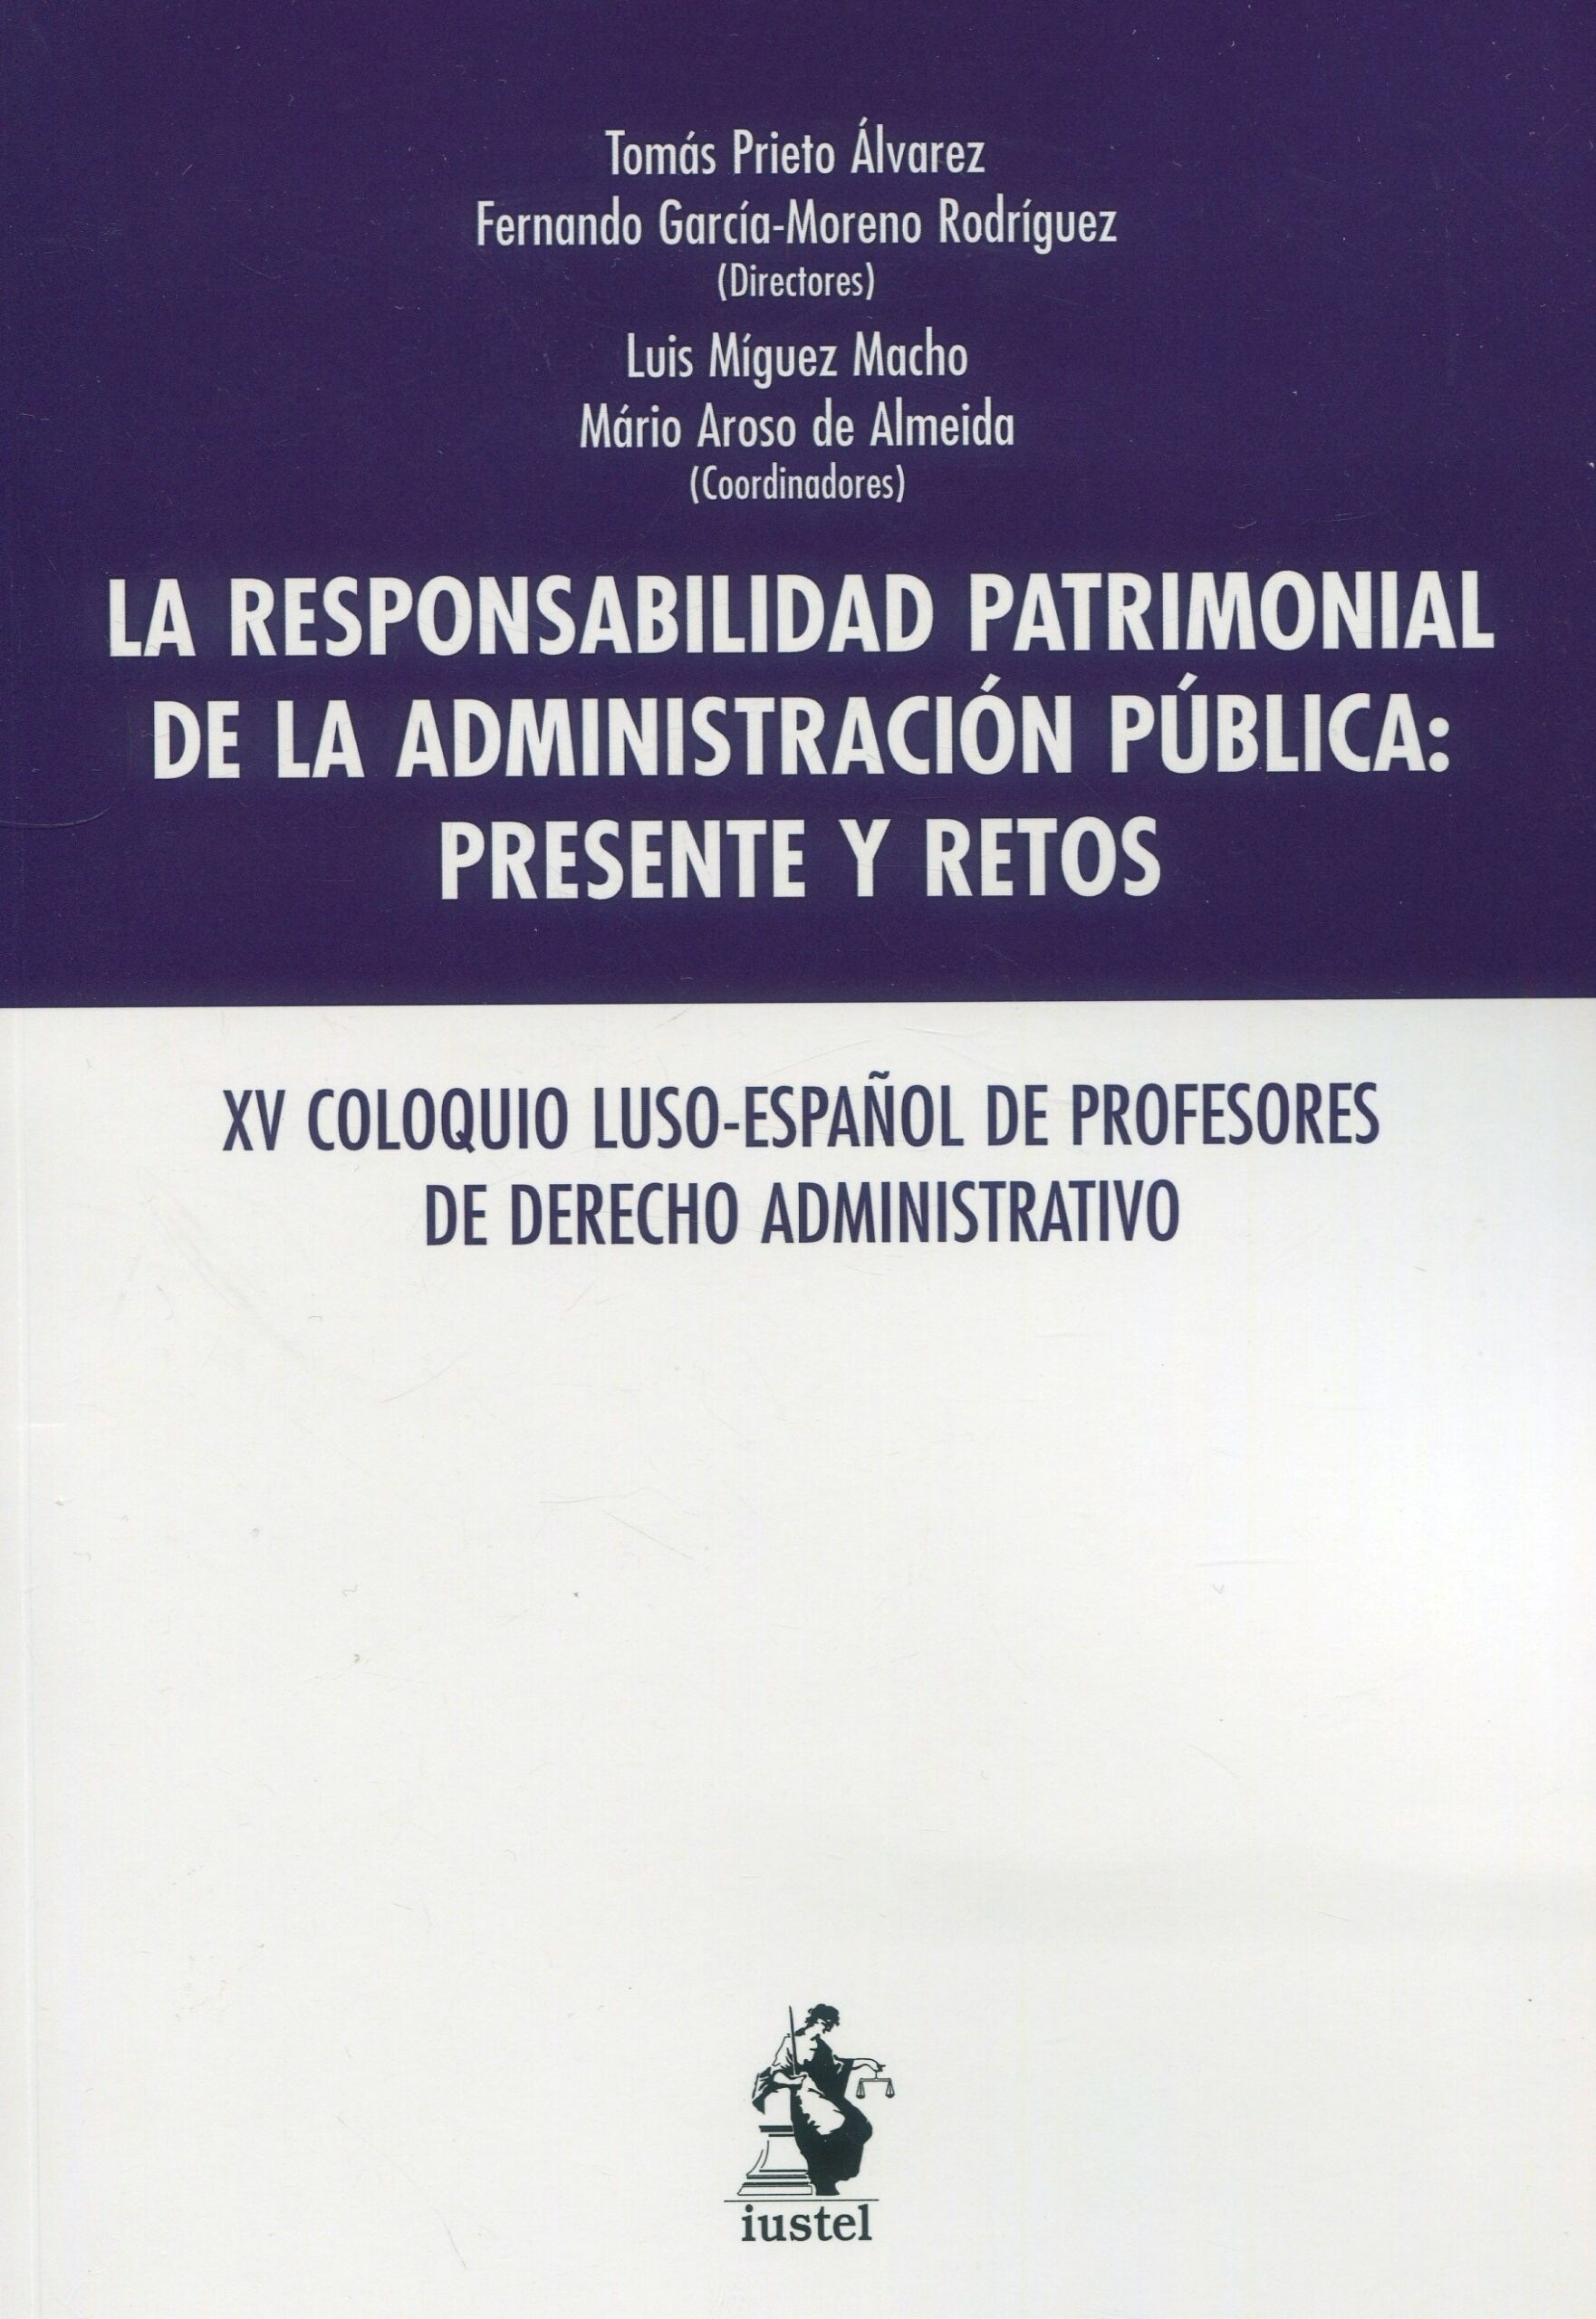 Responsabilidad patrimonial de la Administración Pública "XV Coloquio luso-español de profesores de derecho administrativo"